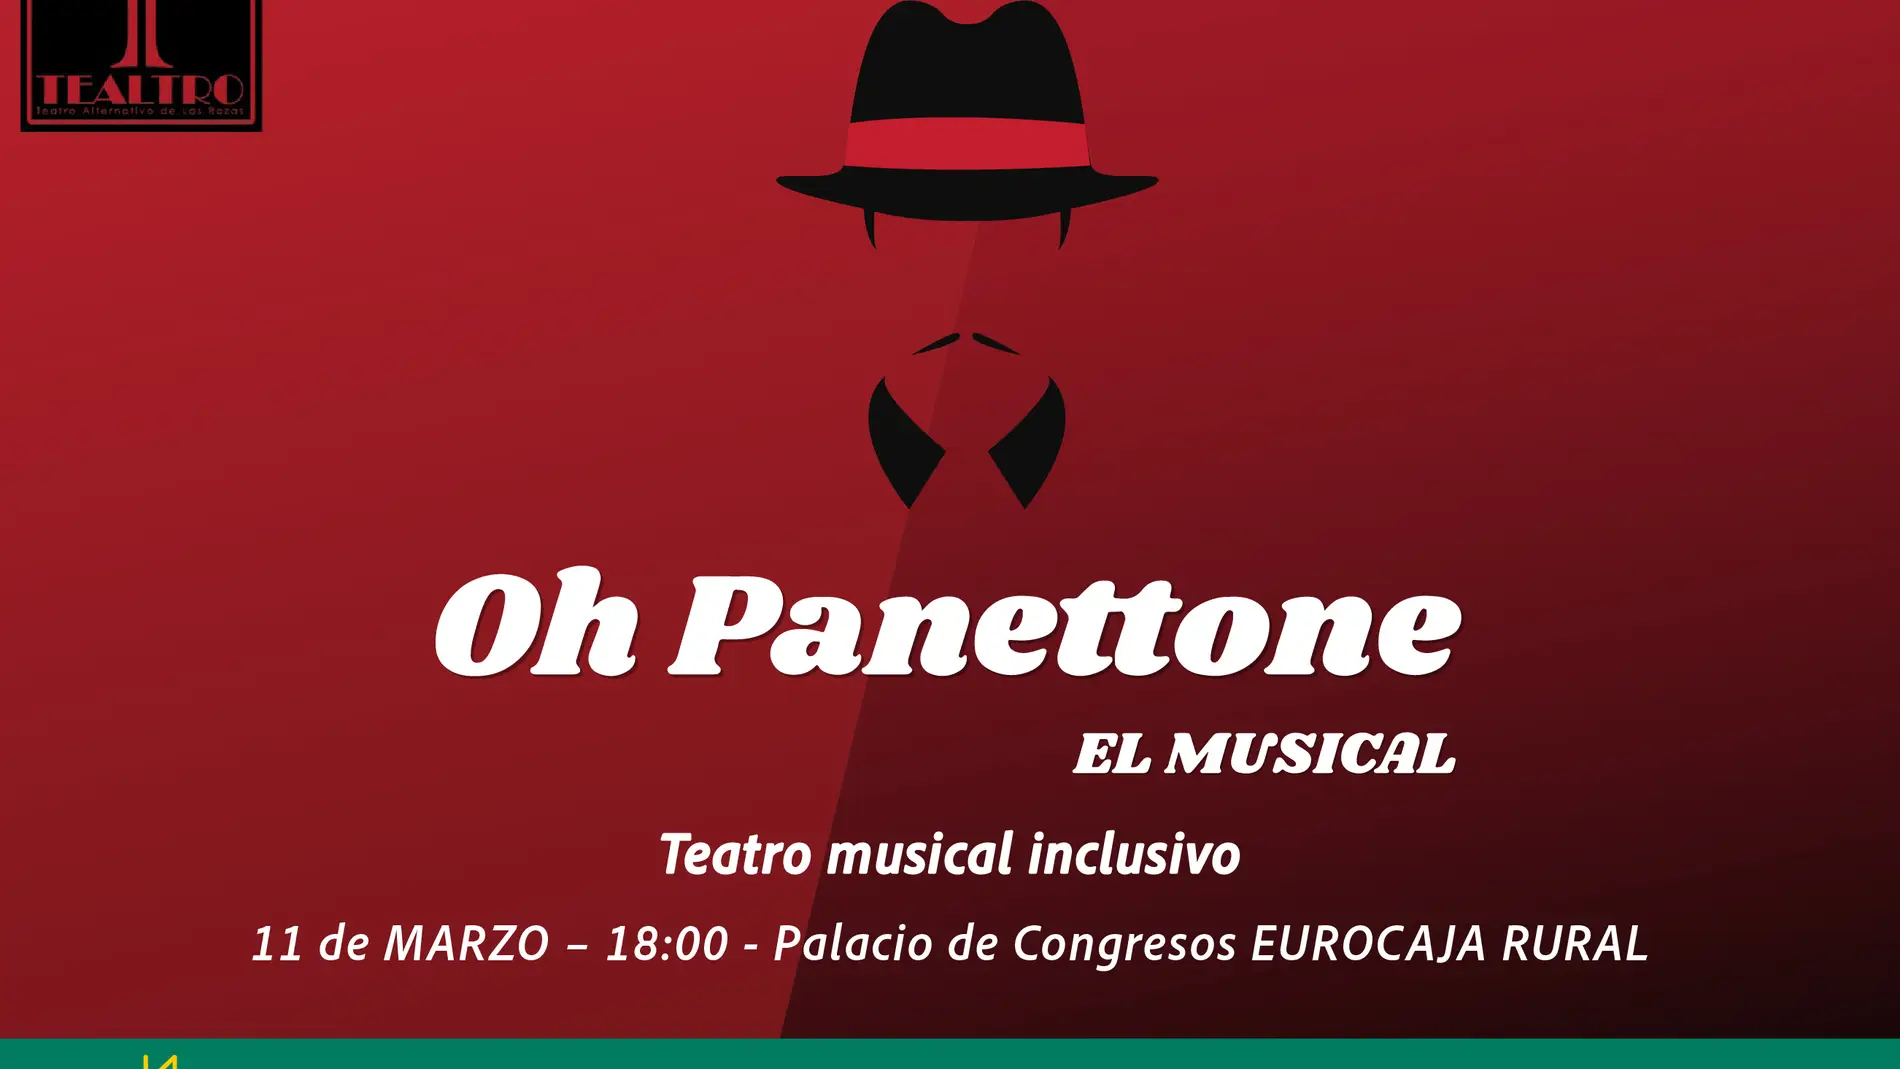 Fundación Eurocaja Rural y Tealtro presentan el musical inclusivo "Oh Panettone"